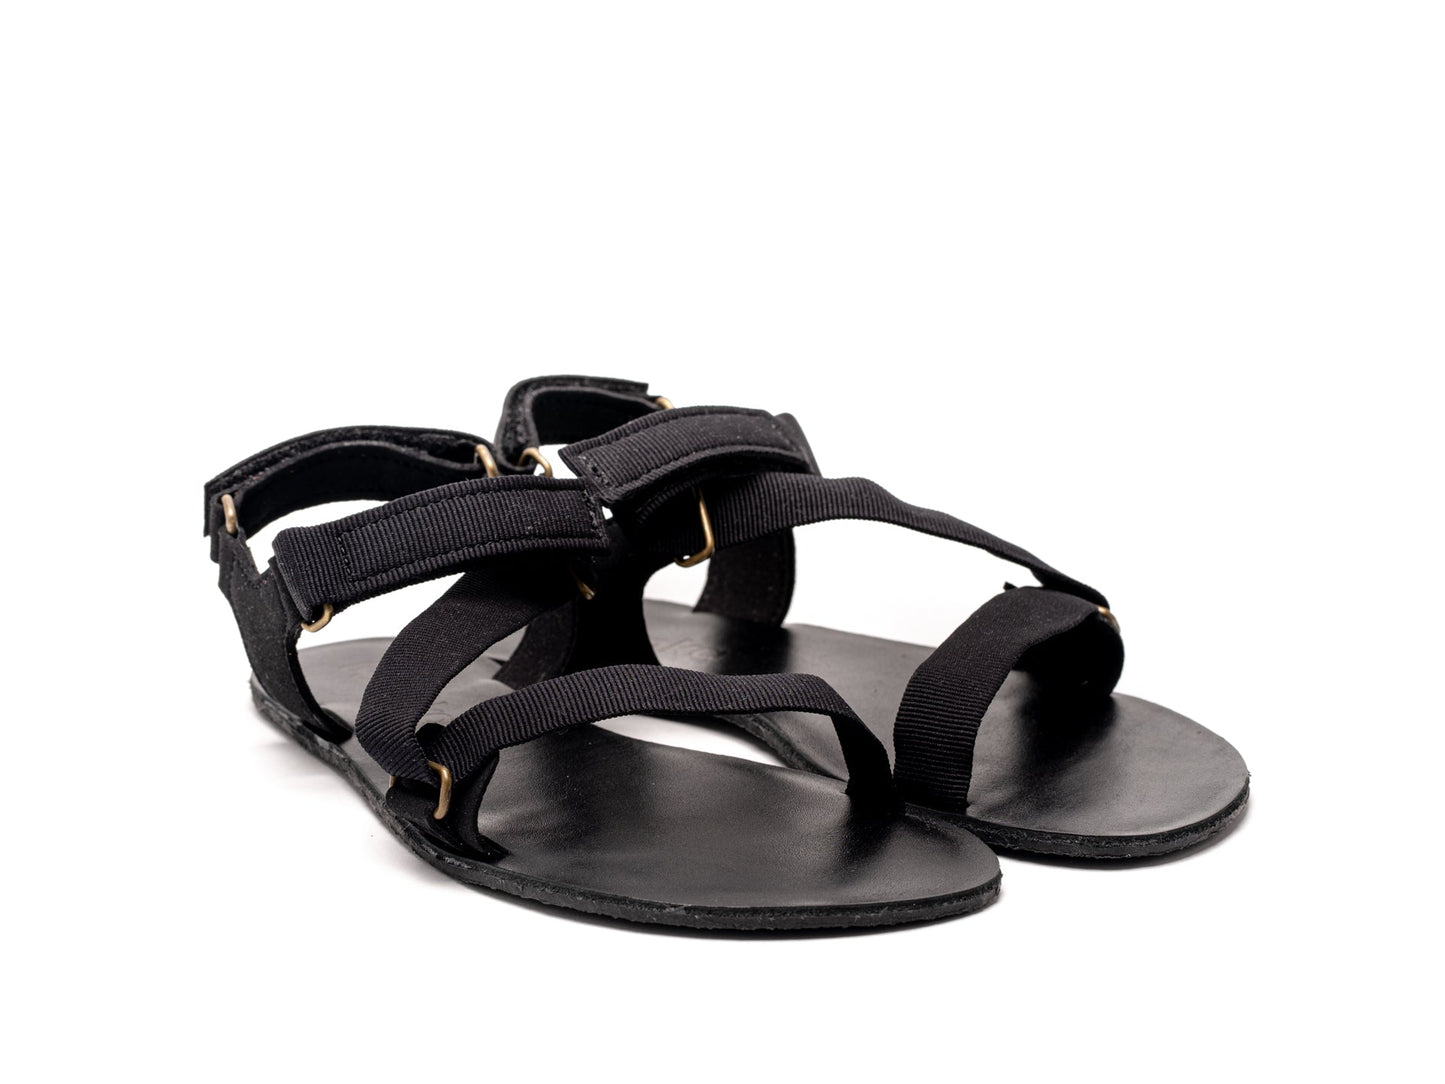 Barefoot Sandals - Be Lenka Flexi - Black-Be Lenka-Cacles Barefoot